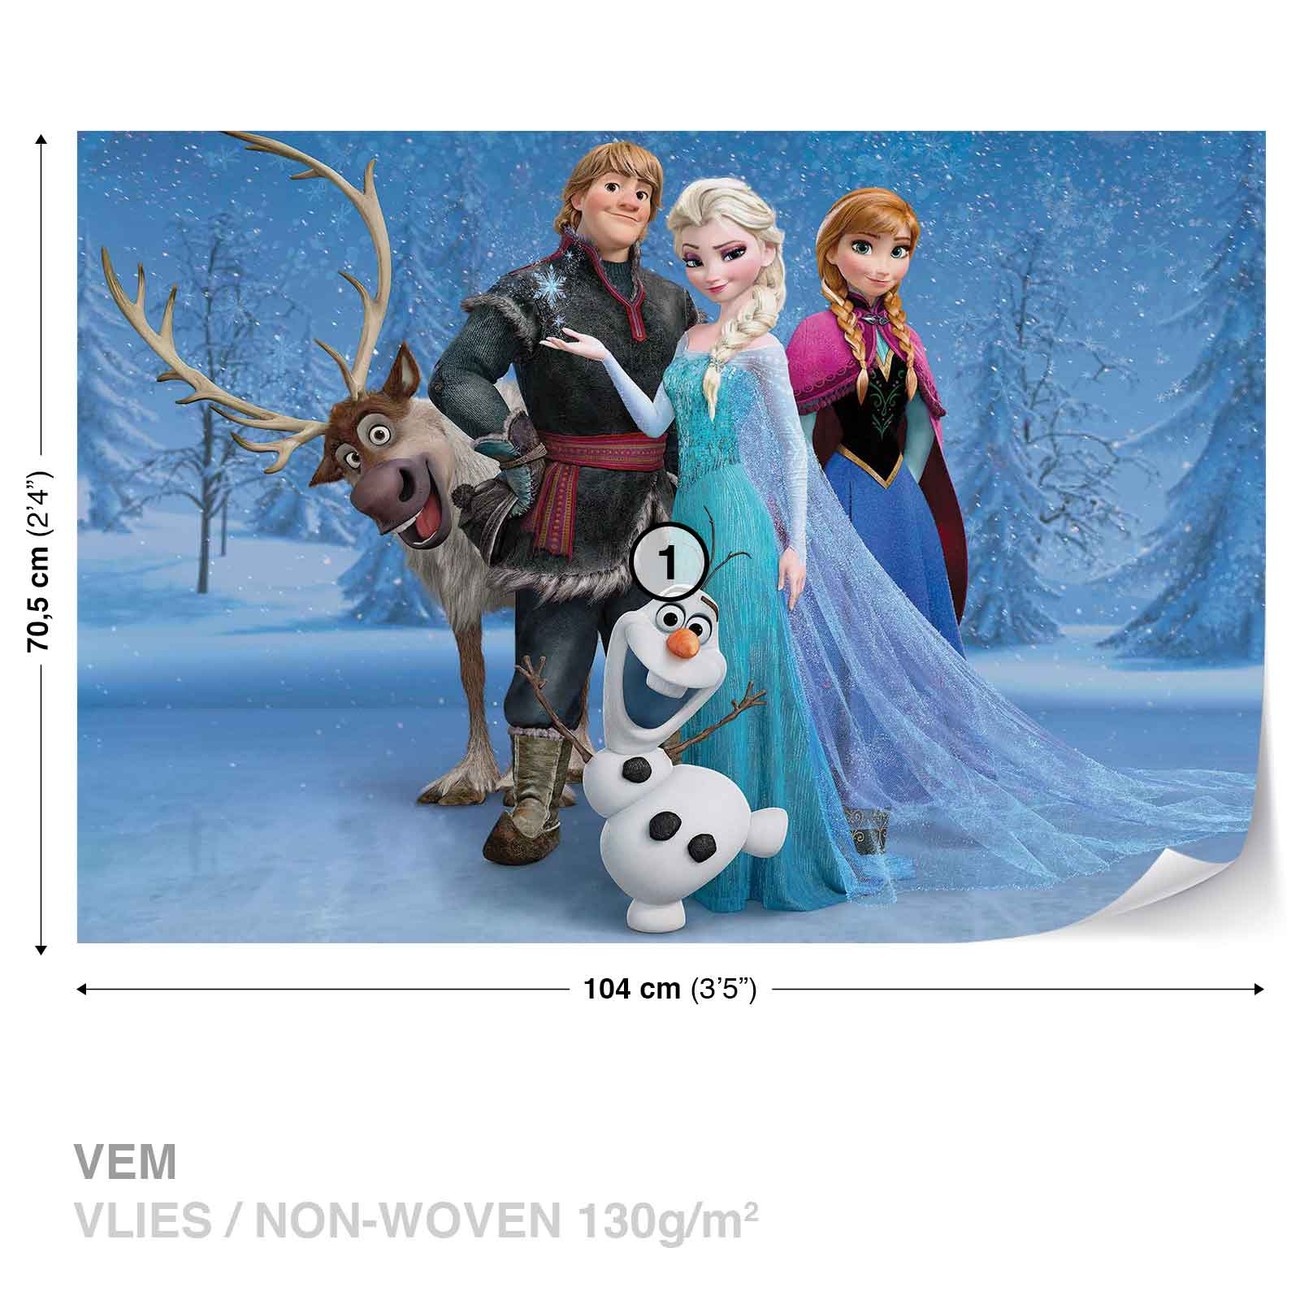 Ødelægge Rejsende købmand sy Disney Frozen Elsa Anna Olaf Sven Fototapet, Tapet på Europosters.dk